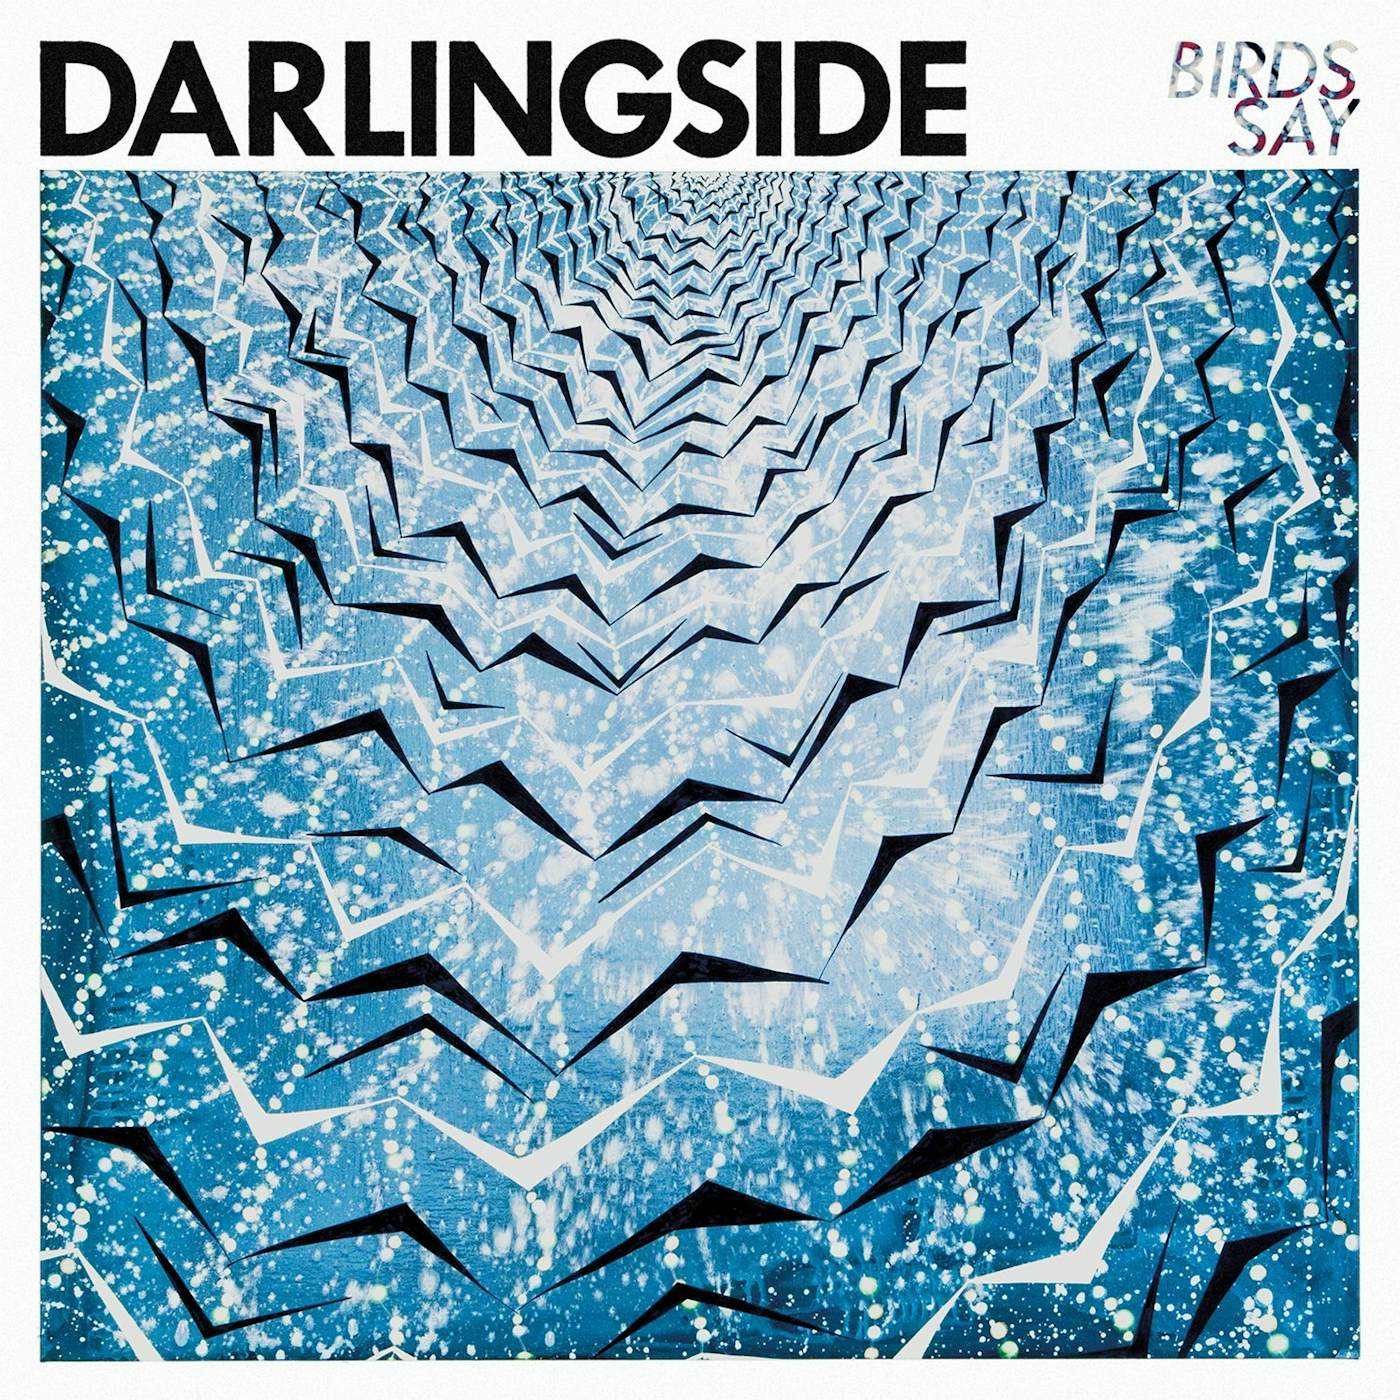 Darlingside Birds Say Vinyl Record